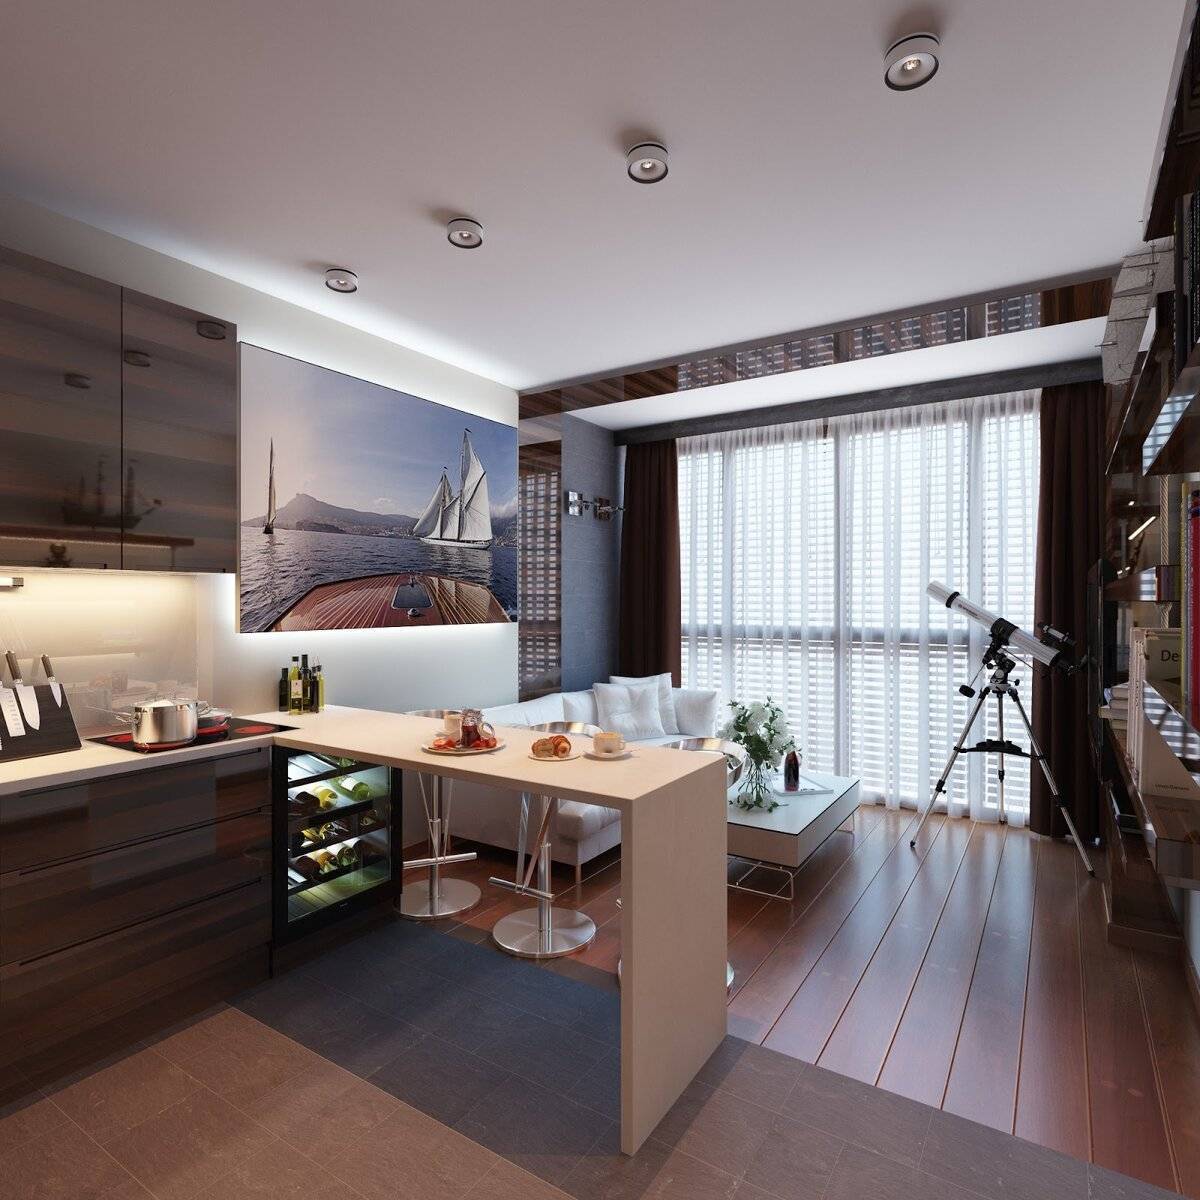 Интерьер кухни 14 м, планировки с диваном, балконом, окном, островом, tv